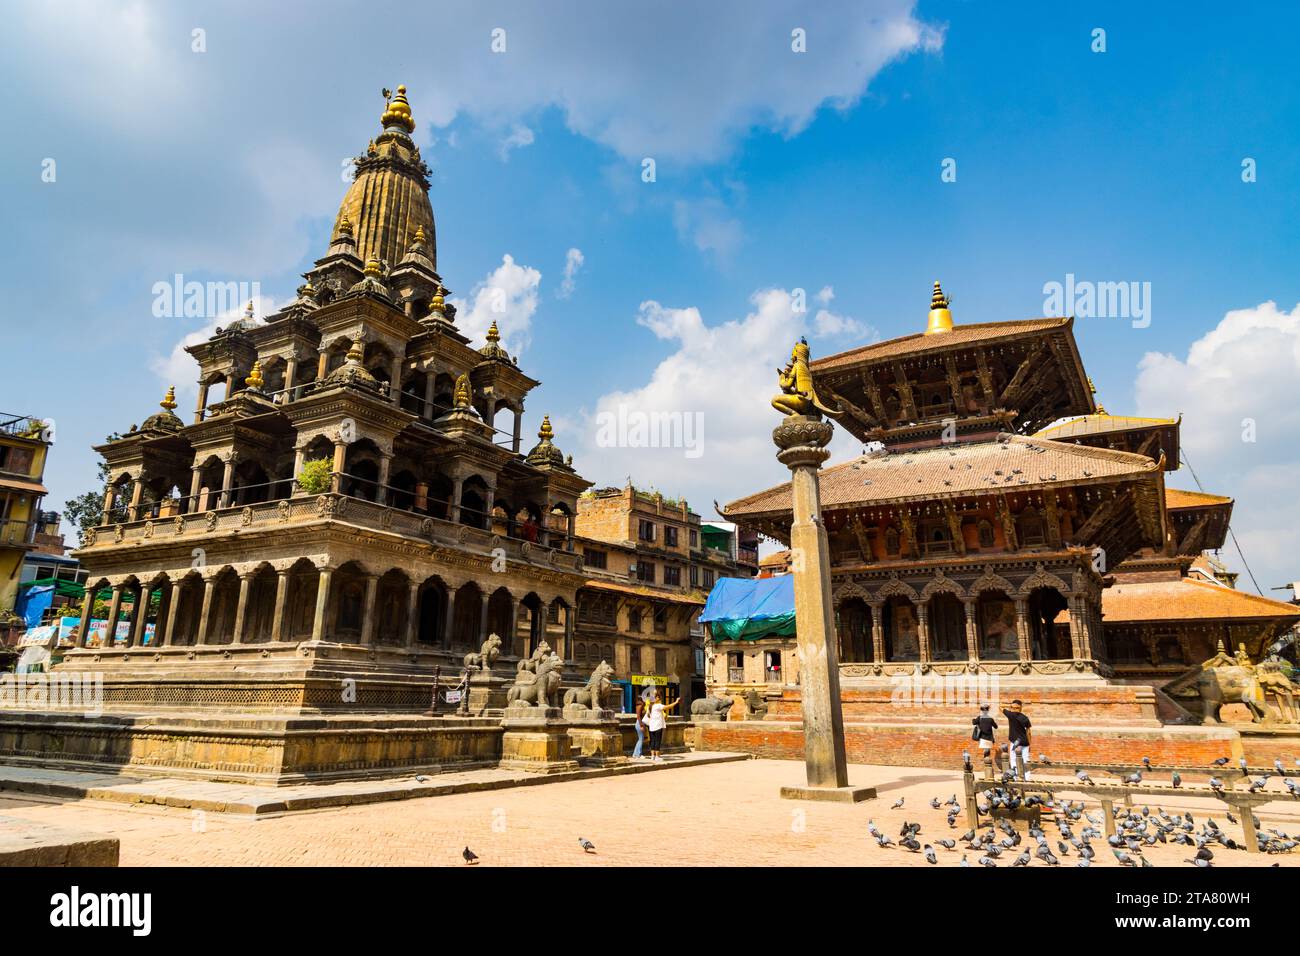 Temple Krishna et site du patrimoine de l'UNESCO Patan Durbar Square à Lalitpur, Népal Banque D'Images